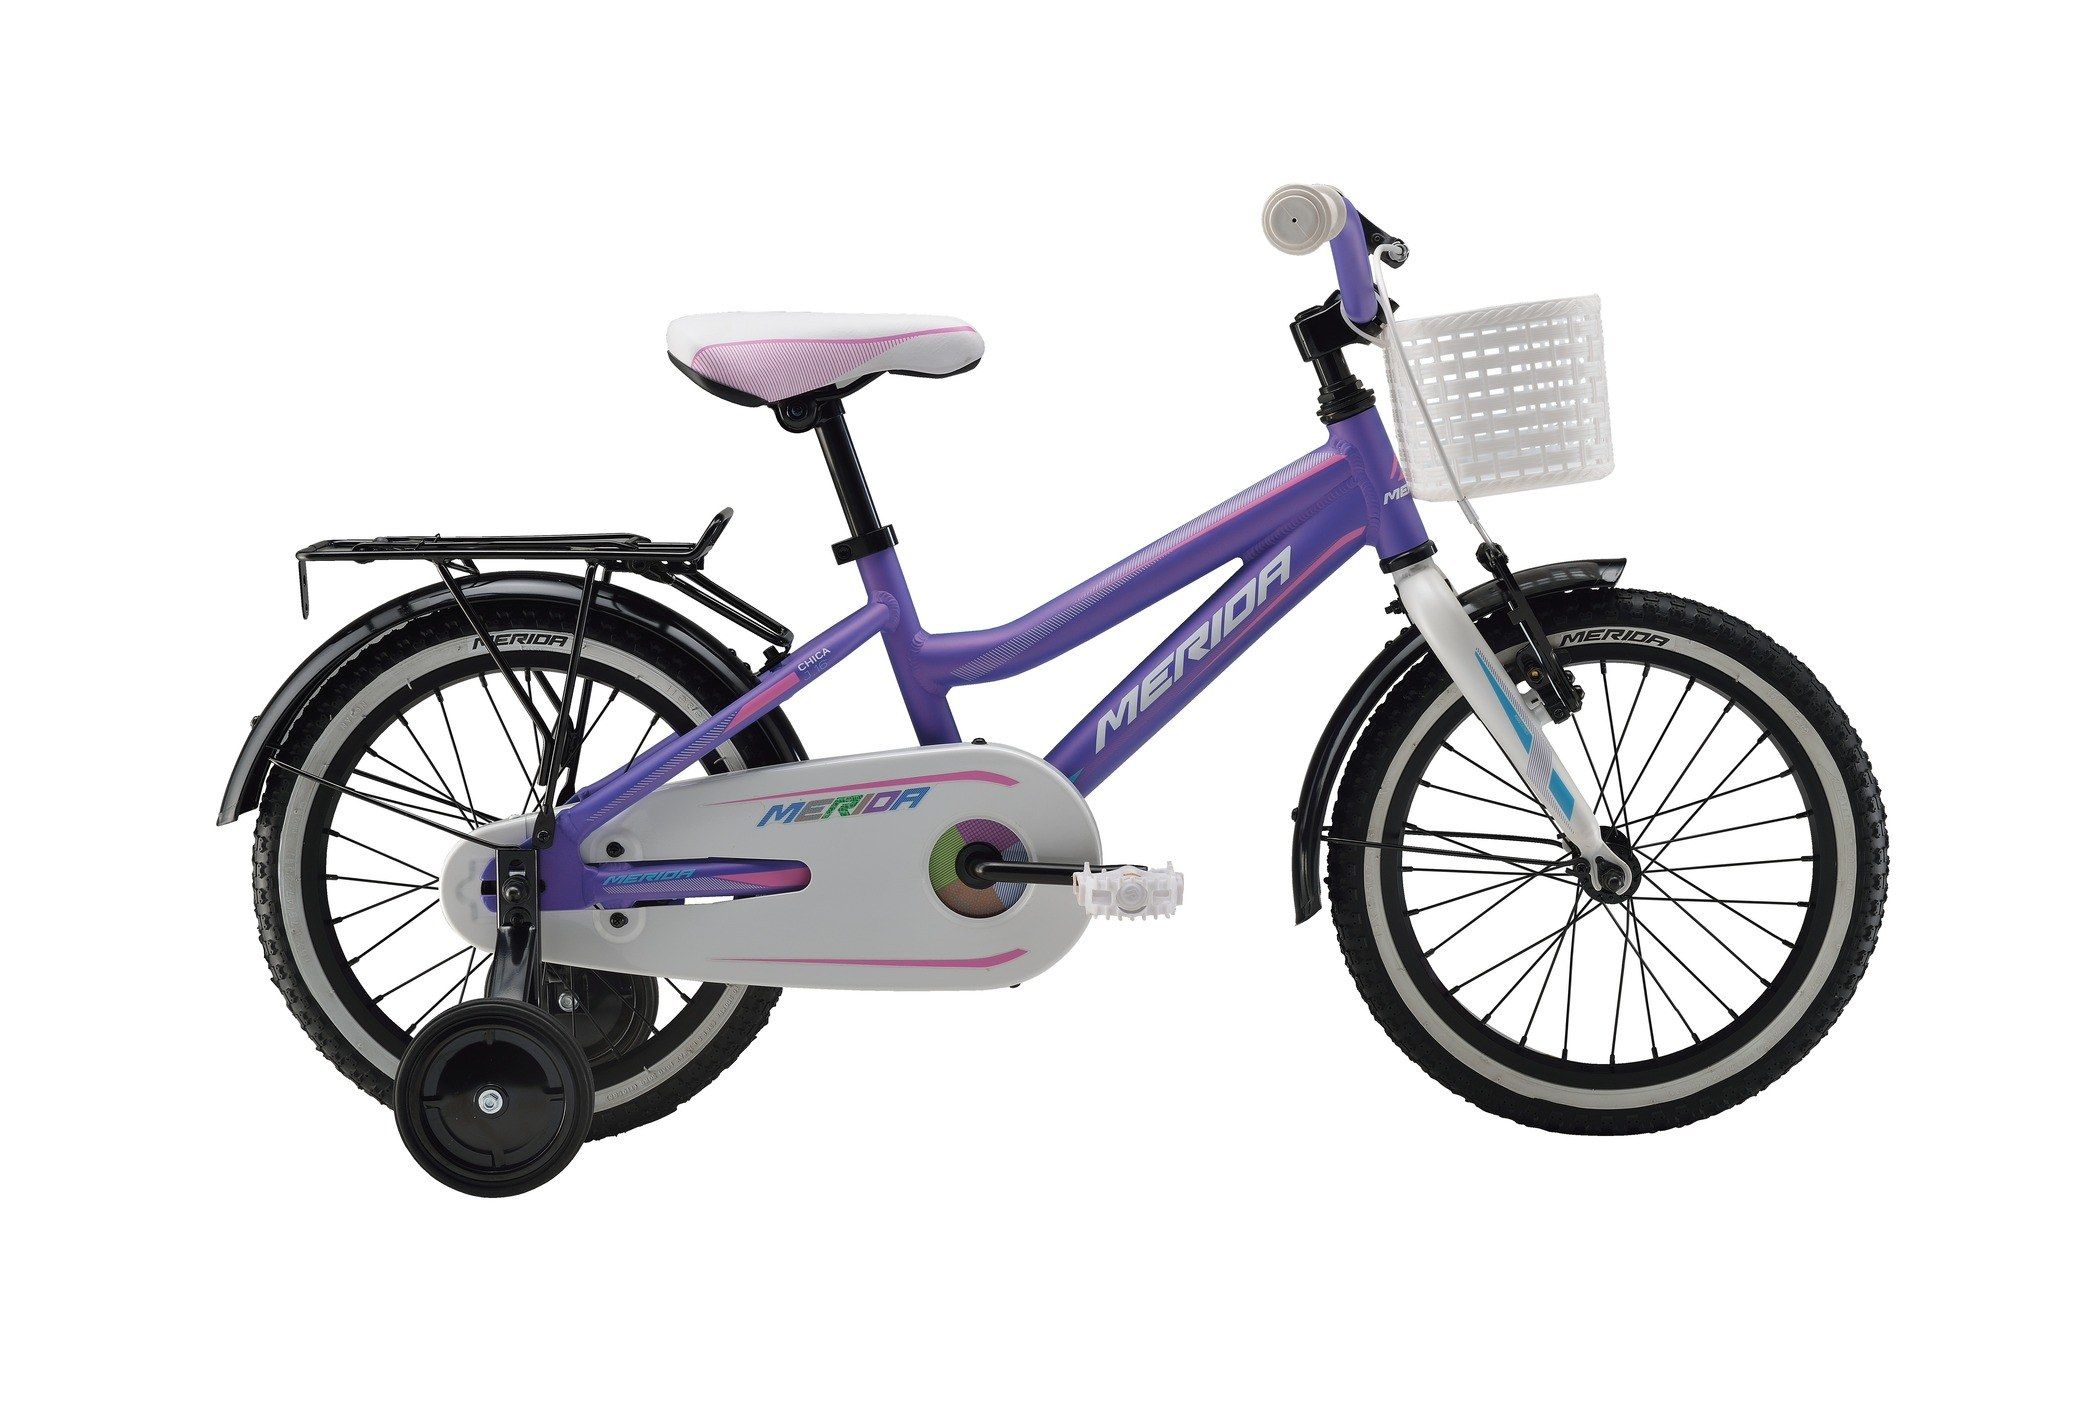  Велосипед трехколесный детский велосипед Merida Chica J16 2016